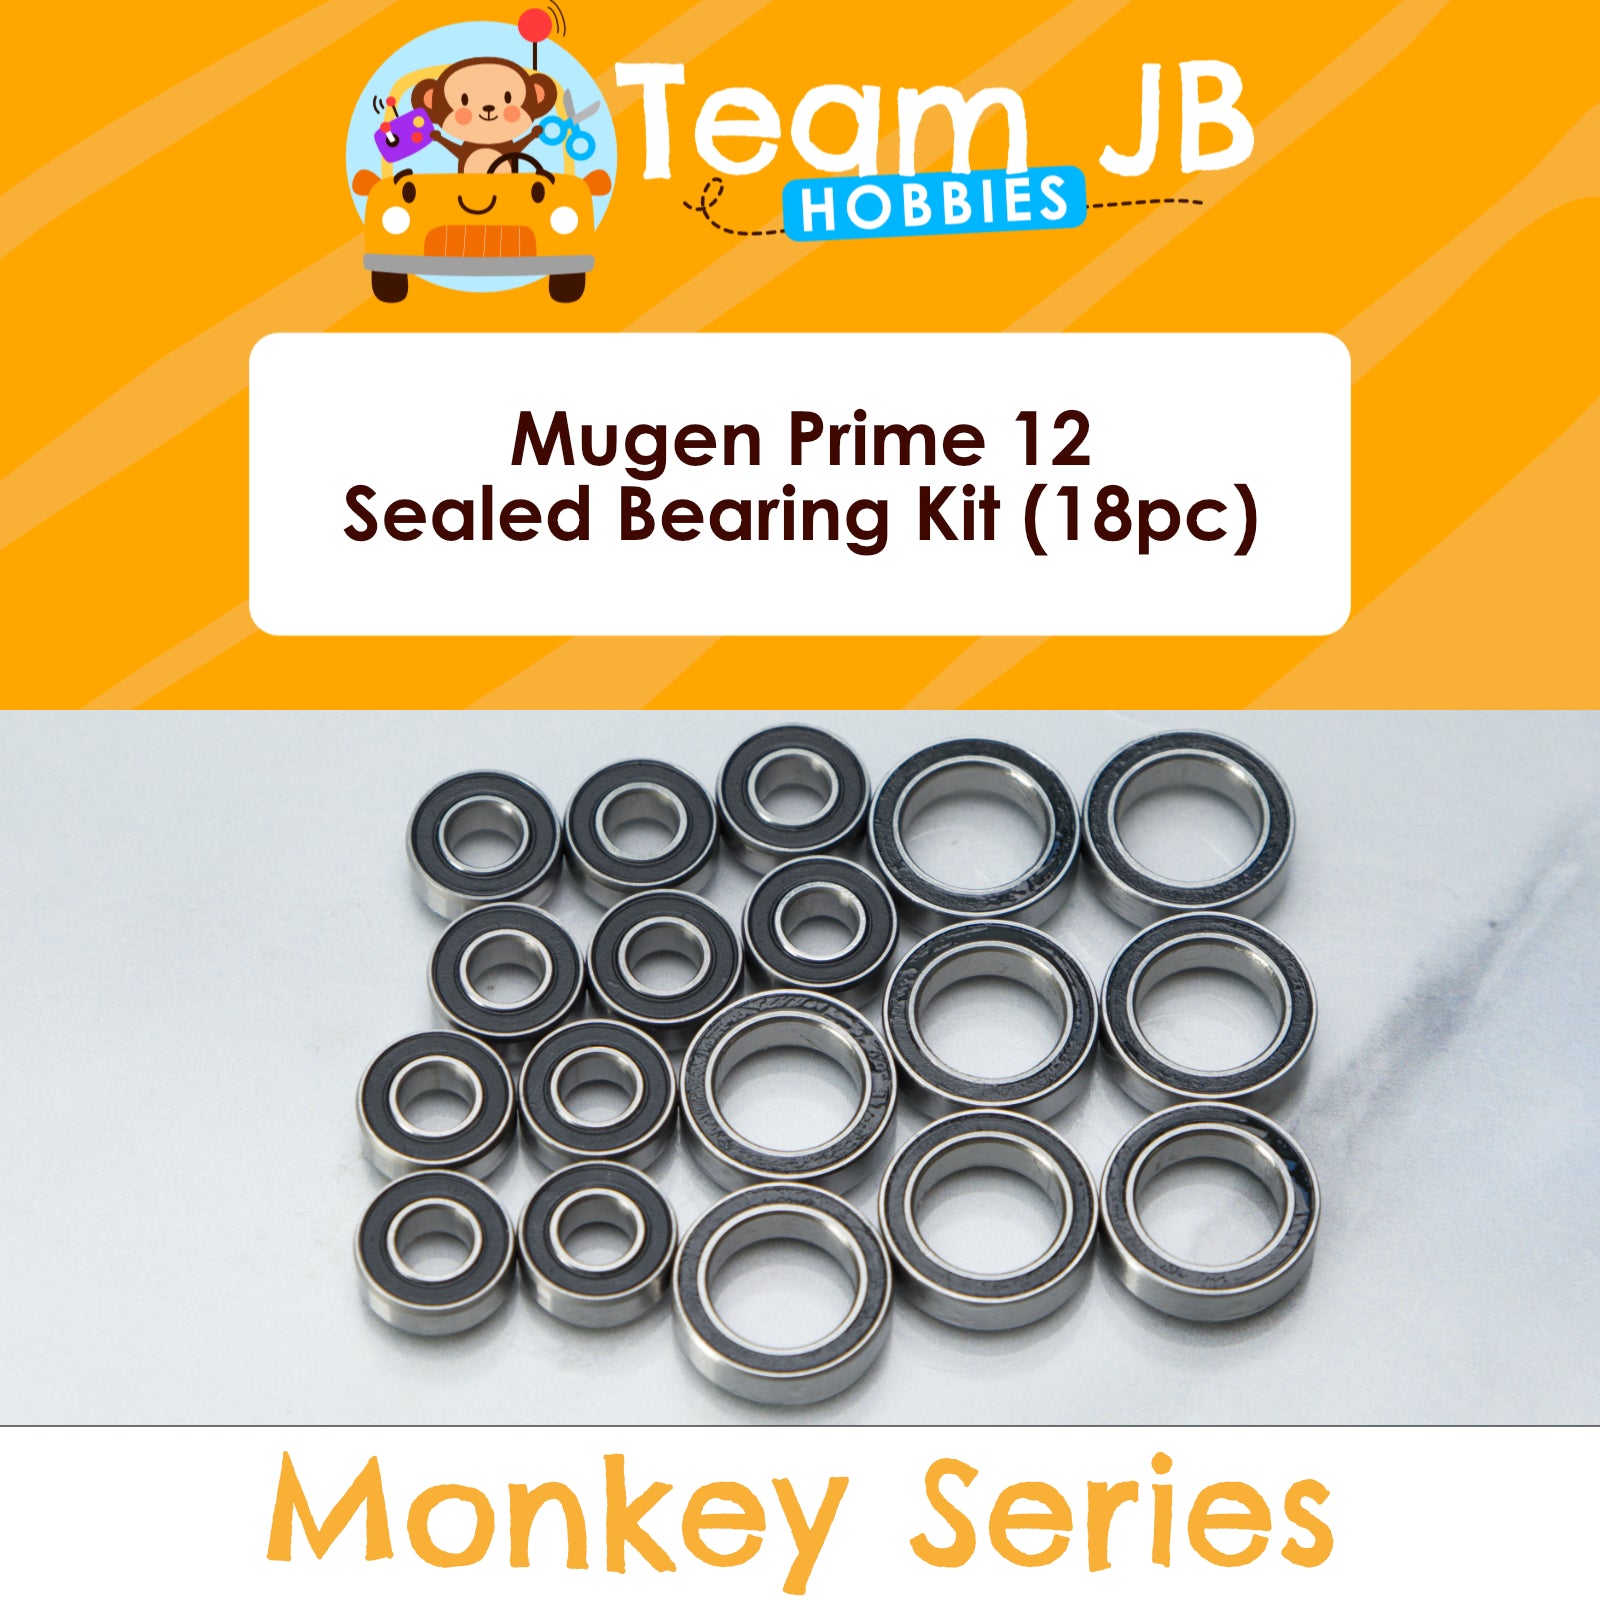 Mugen Prime 12 - Sealed Bearing Kit